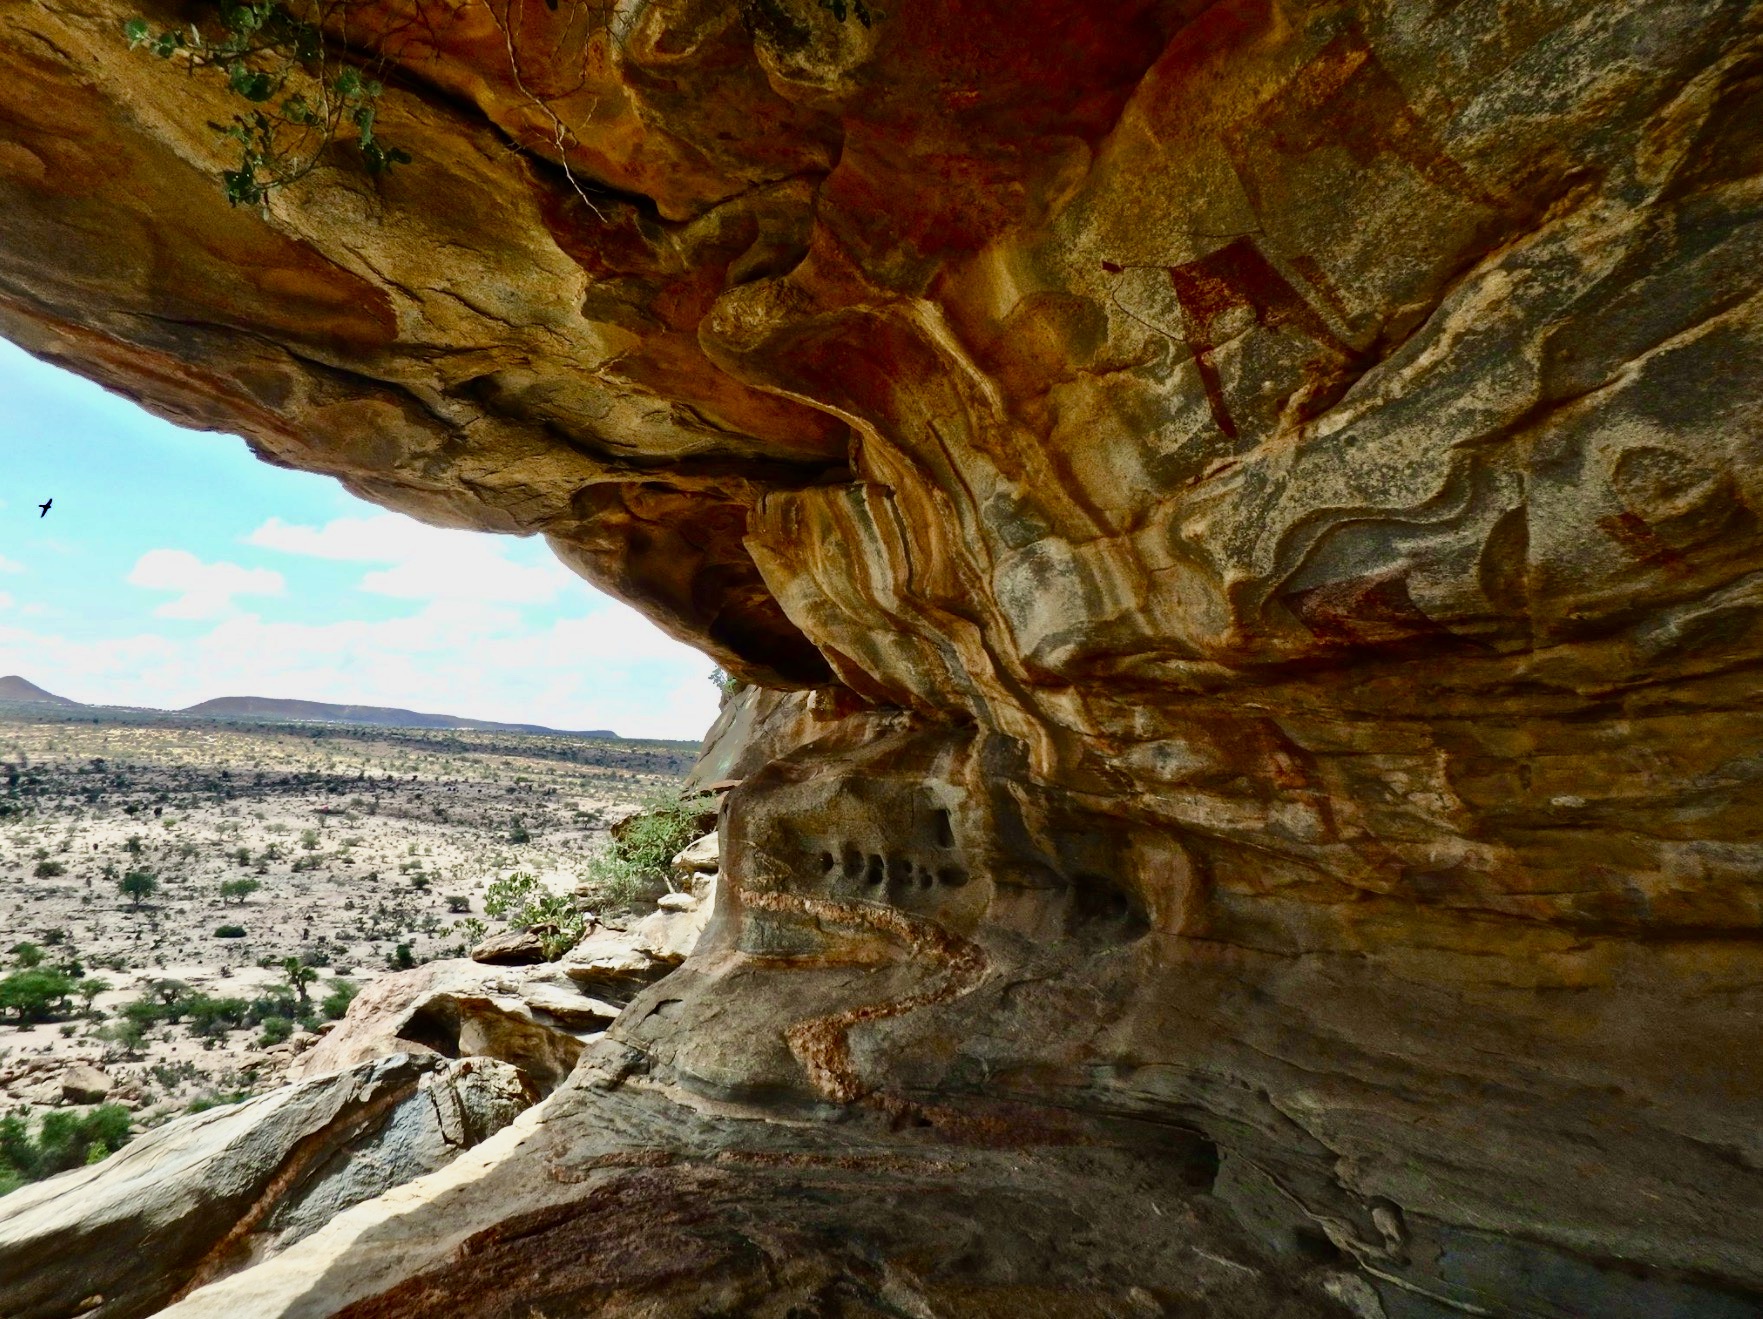 Somaliland caves